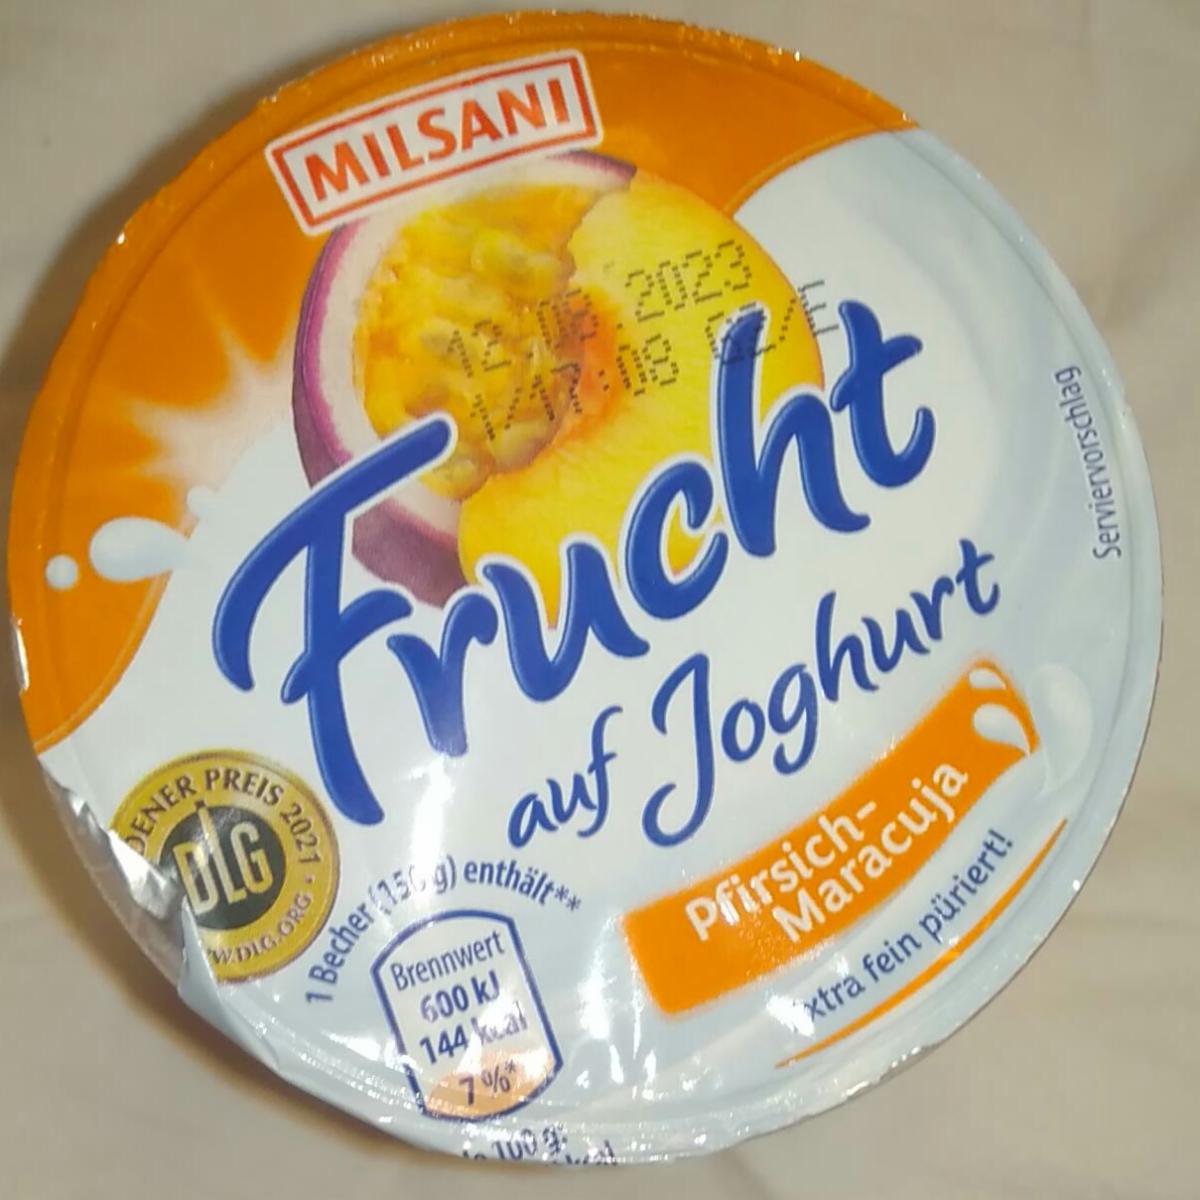 Fotografie - Frucht auf Joghurt Pfirsich-Maracuja Milsani